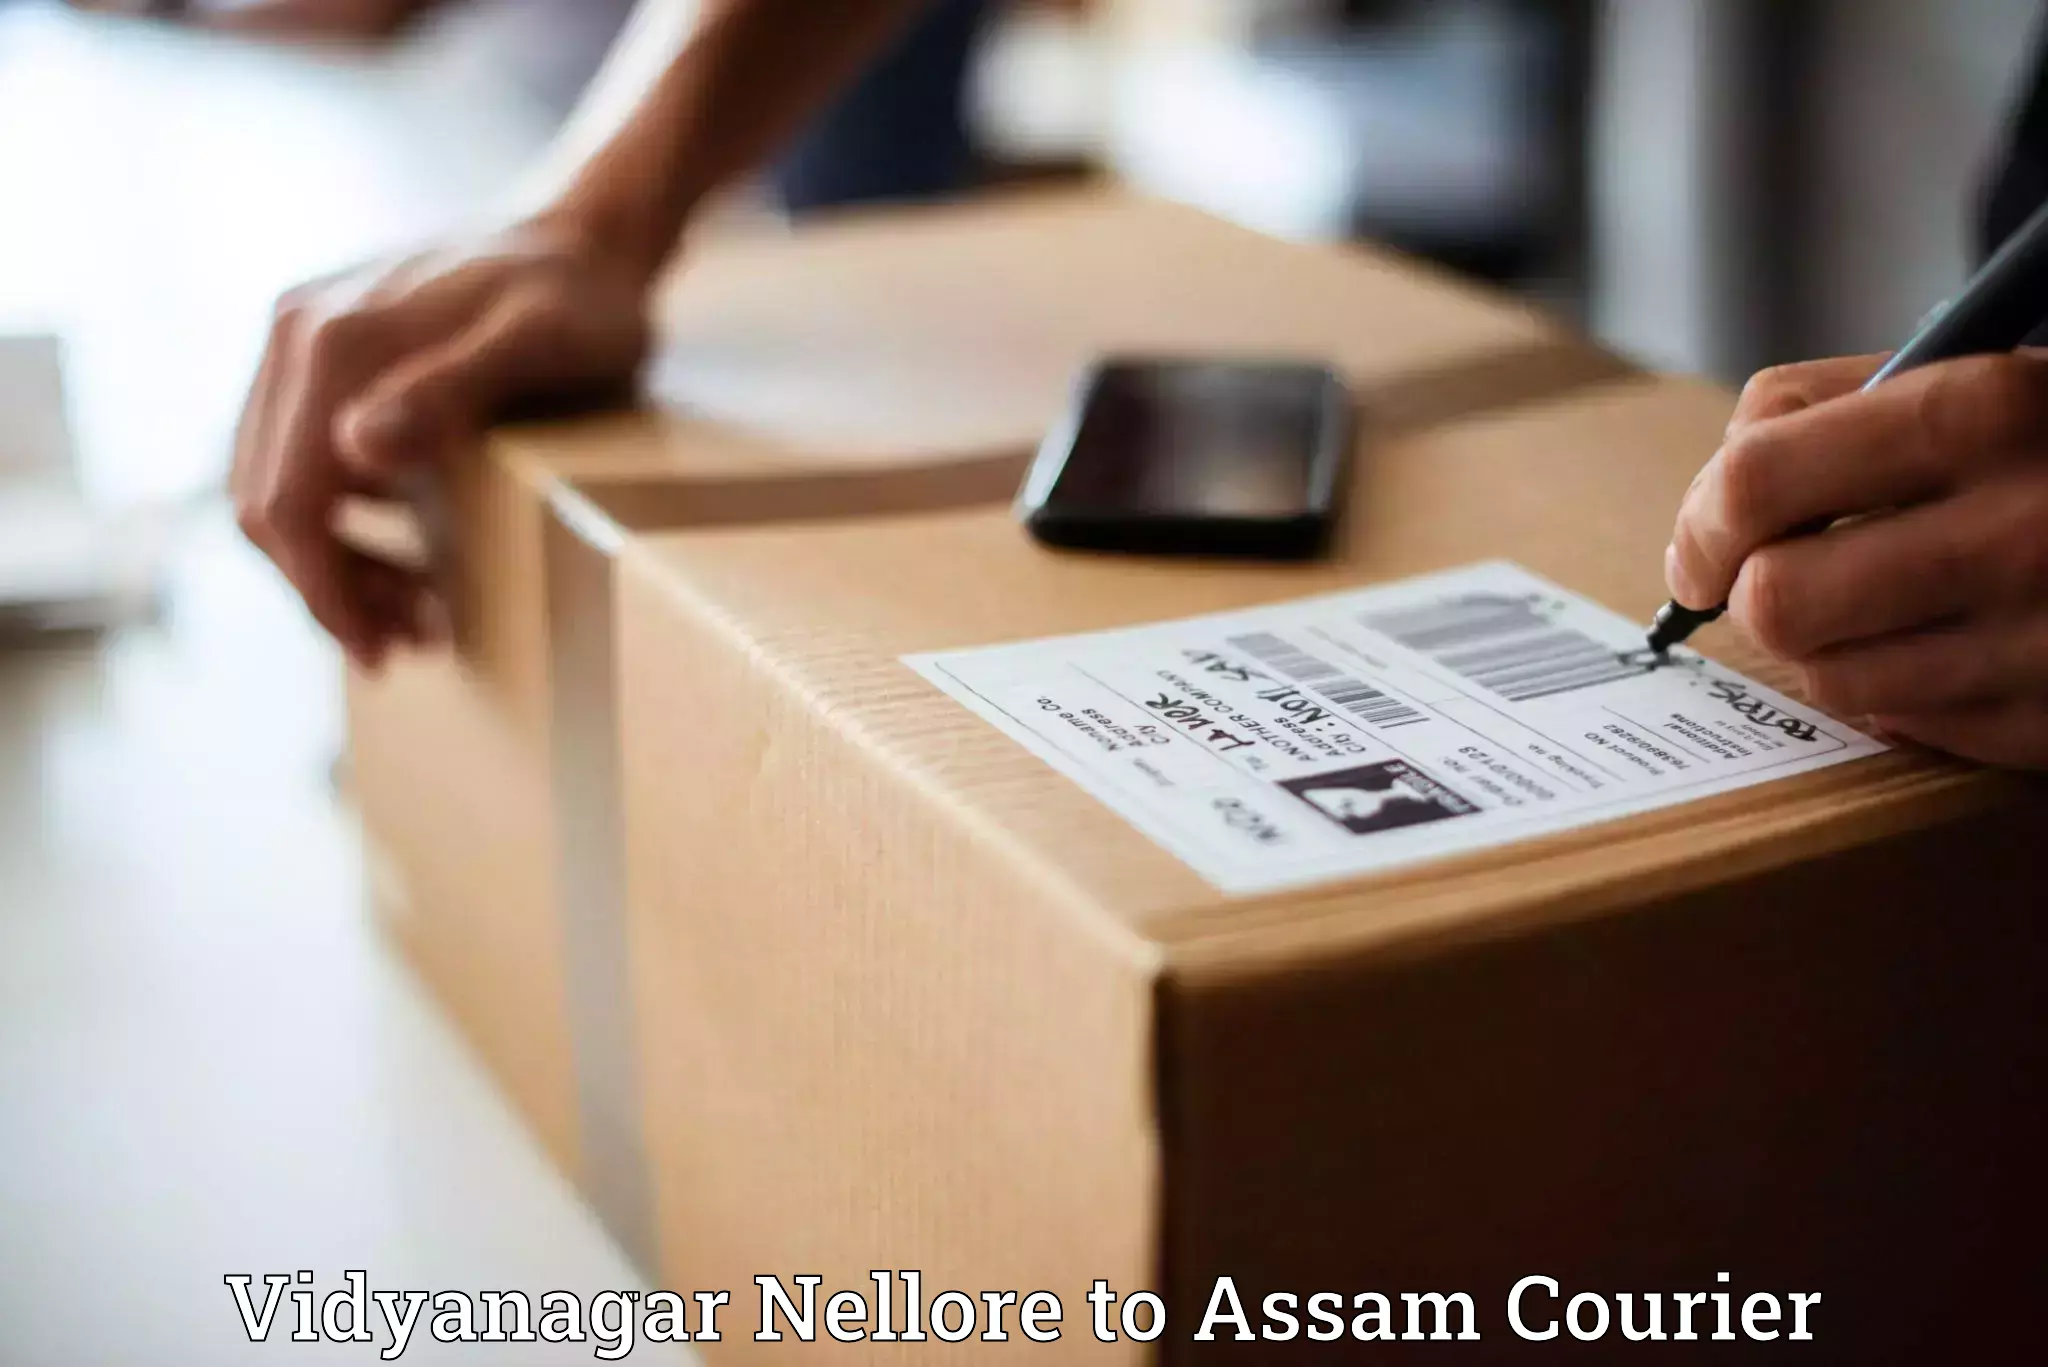 Nationwide parcel services Vidyanagar Nellore to Biswanath